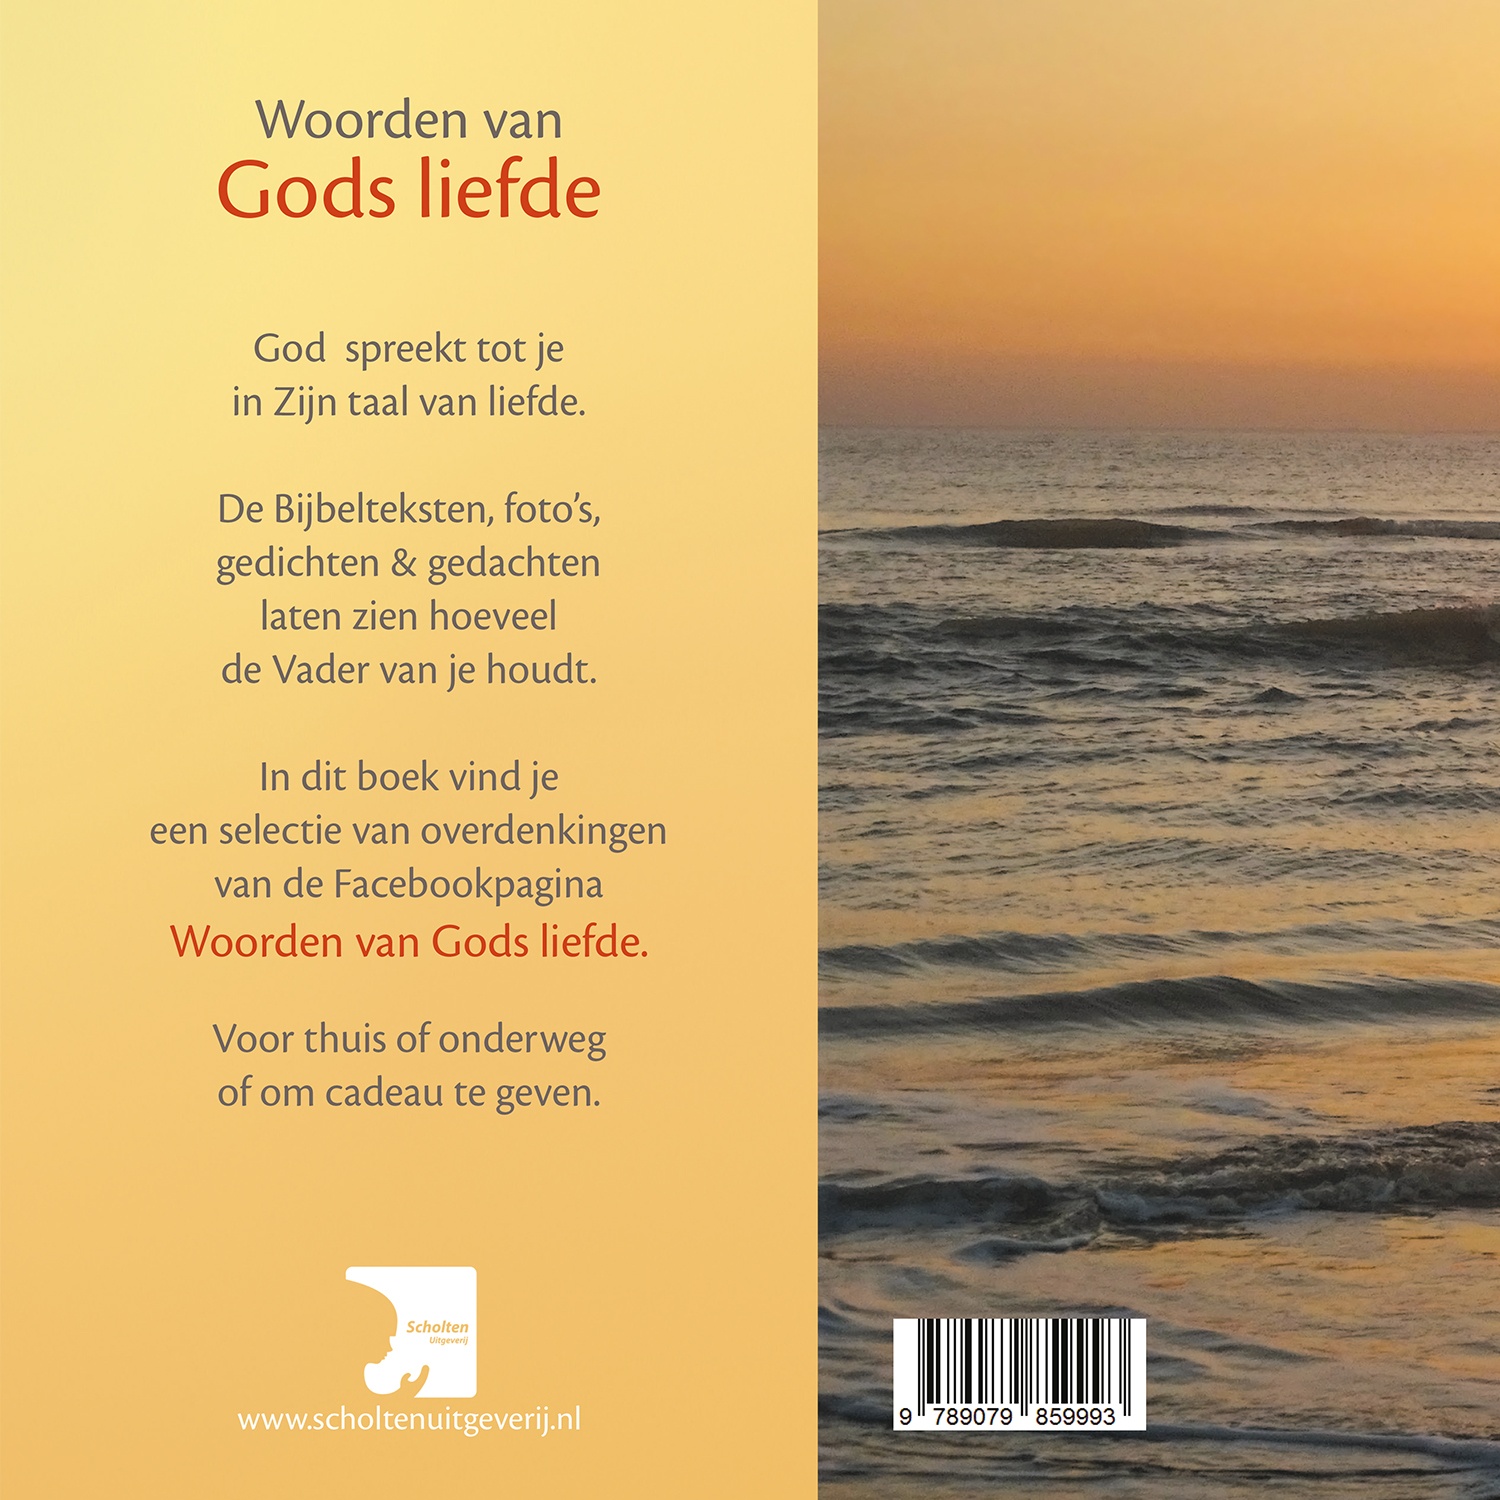 Nieuw Woorden van Gods Liefde, Ans Heij, €13,50 (gratis verz.) QC-56